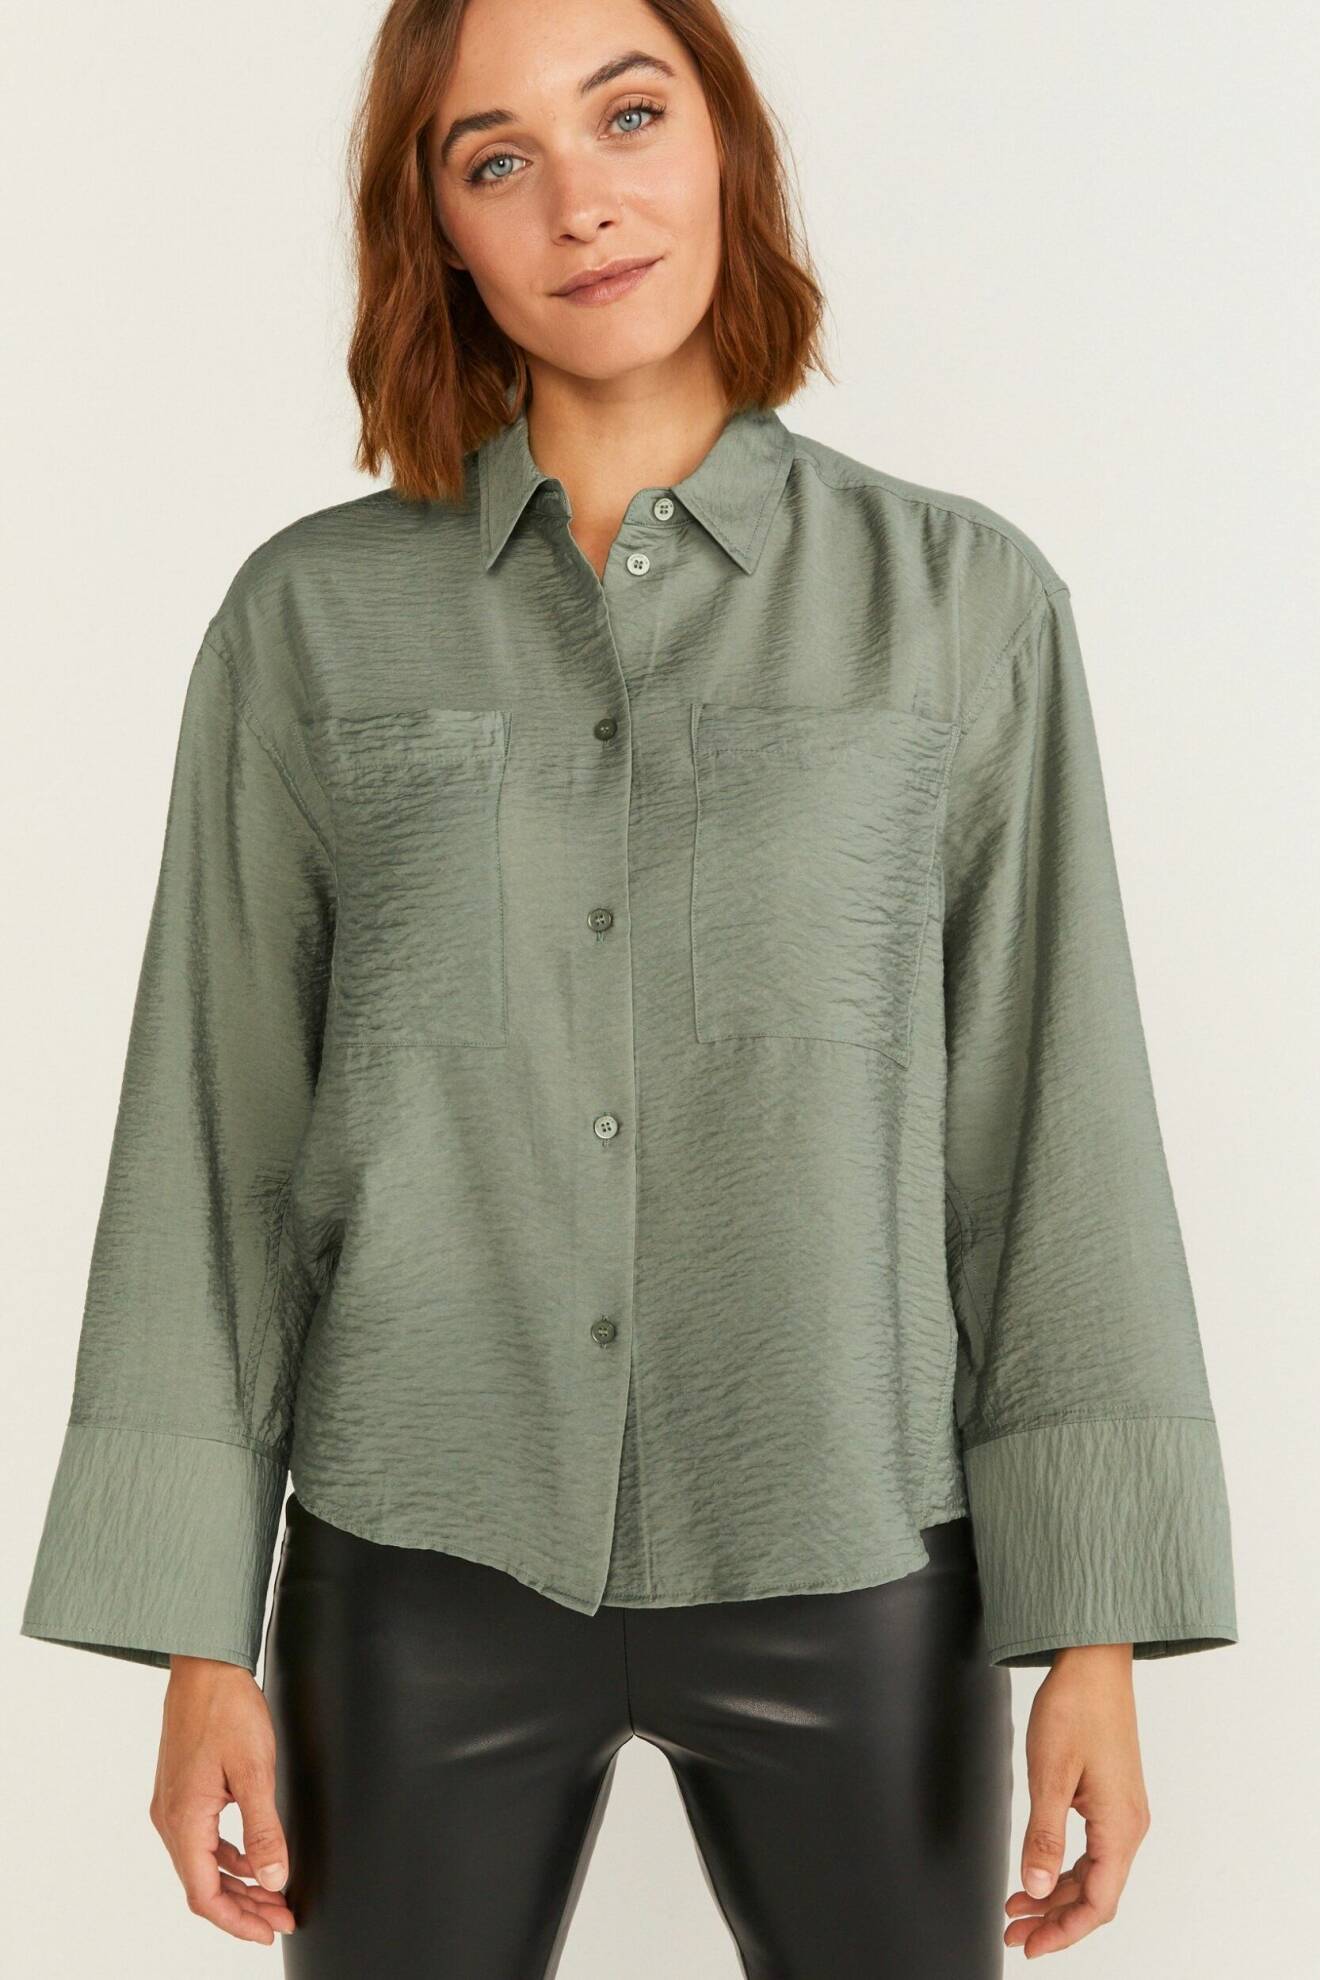 grön skjortblus med bröstfickor och långa ärmar från Stockh lm Studio